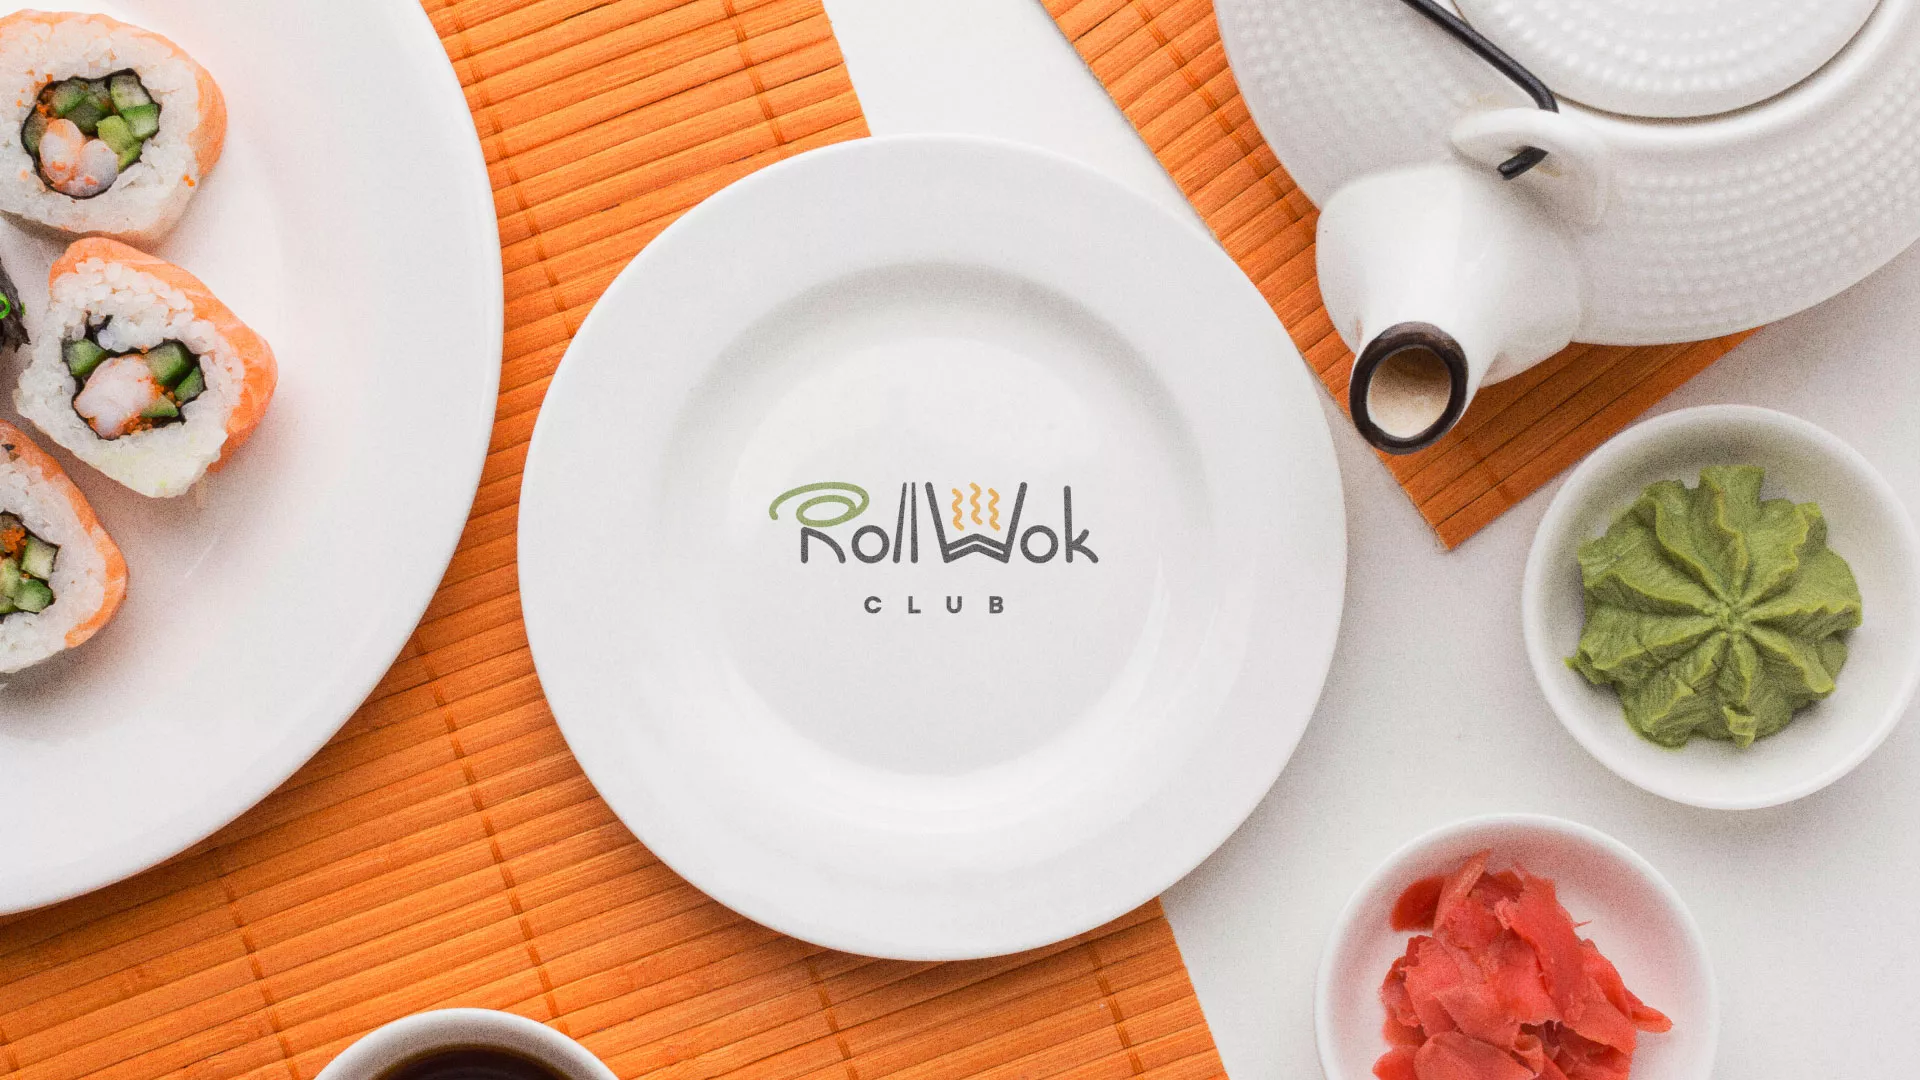 Разработка логотипа и фирменного стиля суши-бара «Roll Wok Club» в Малгобеке